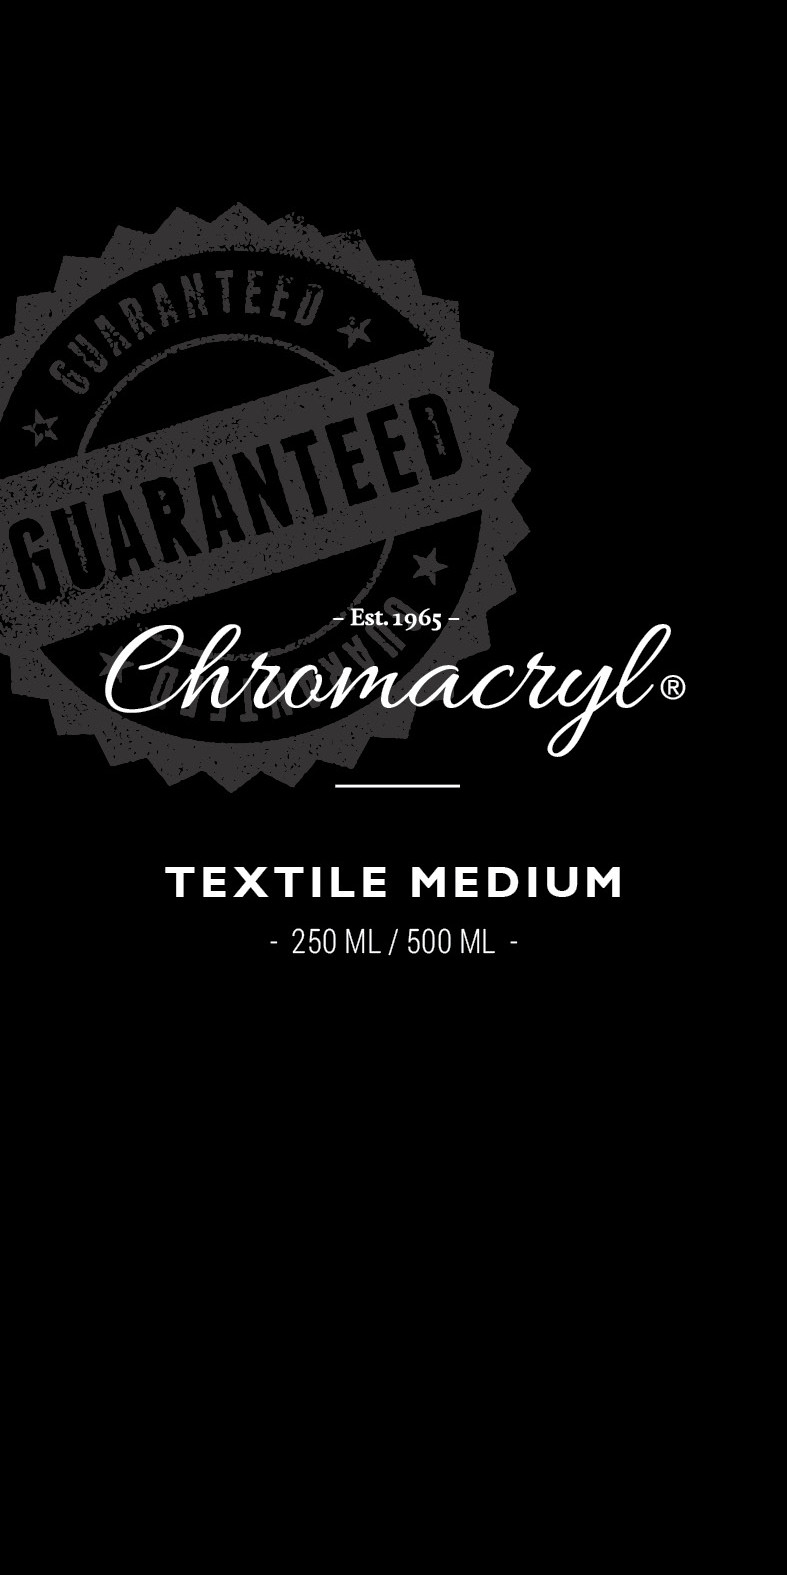 Chromacryl: Textile Medium